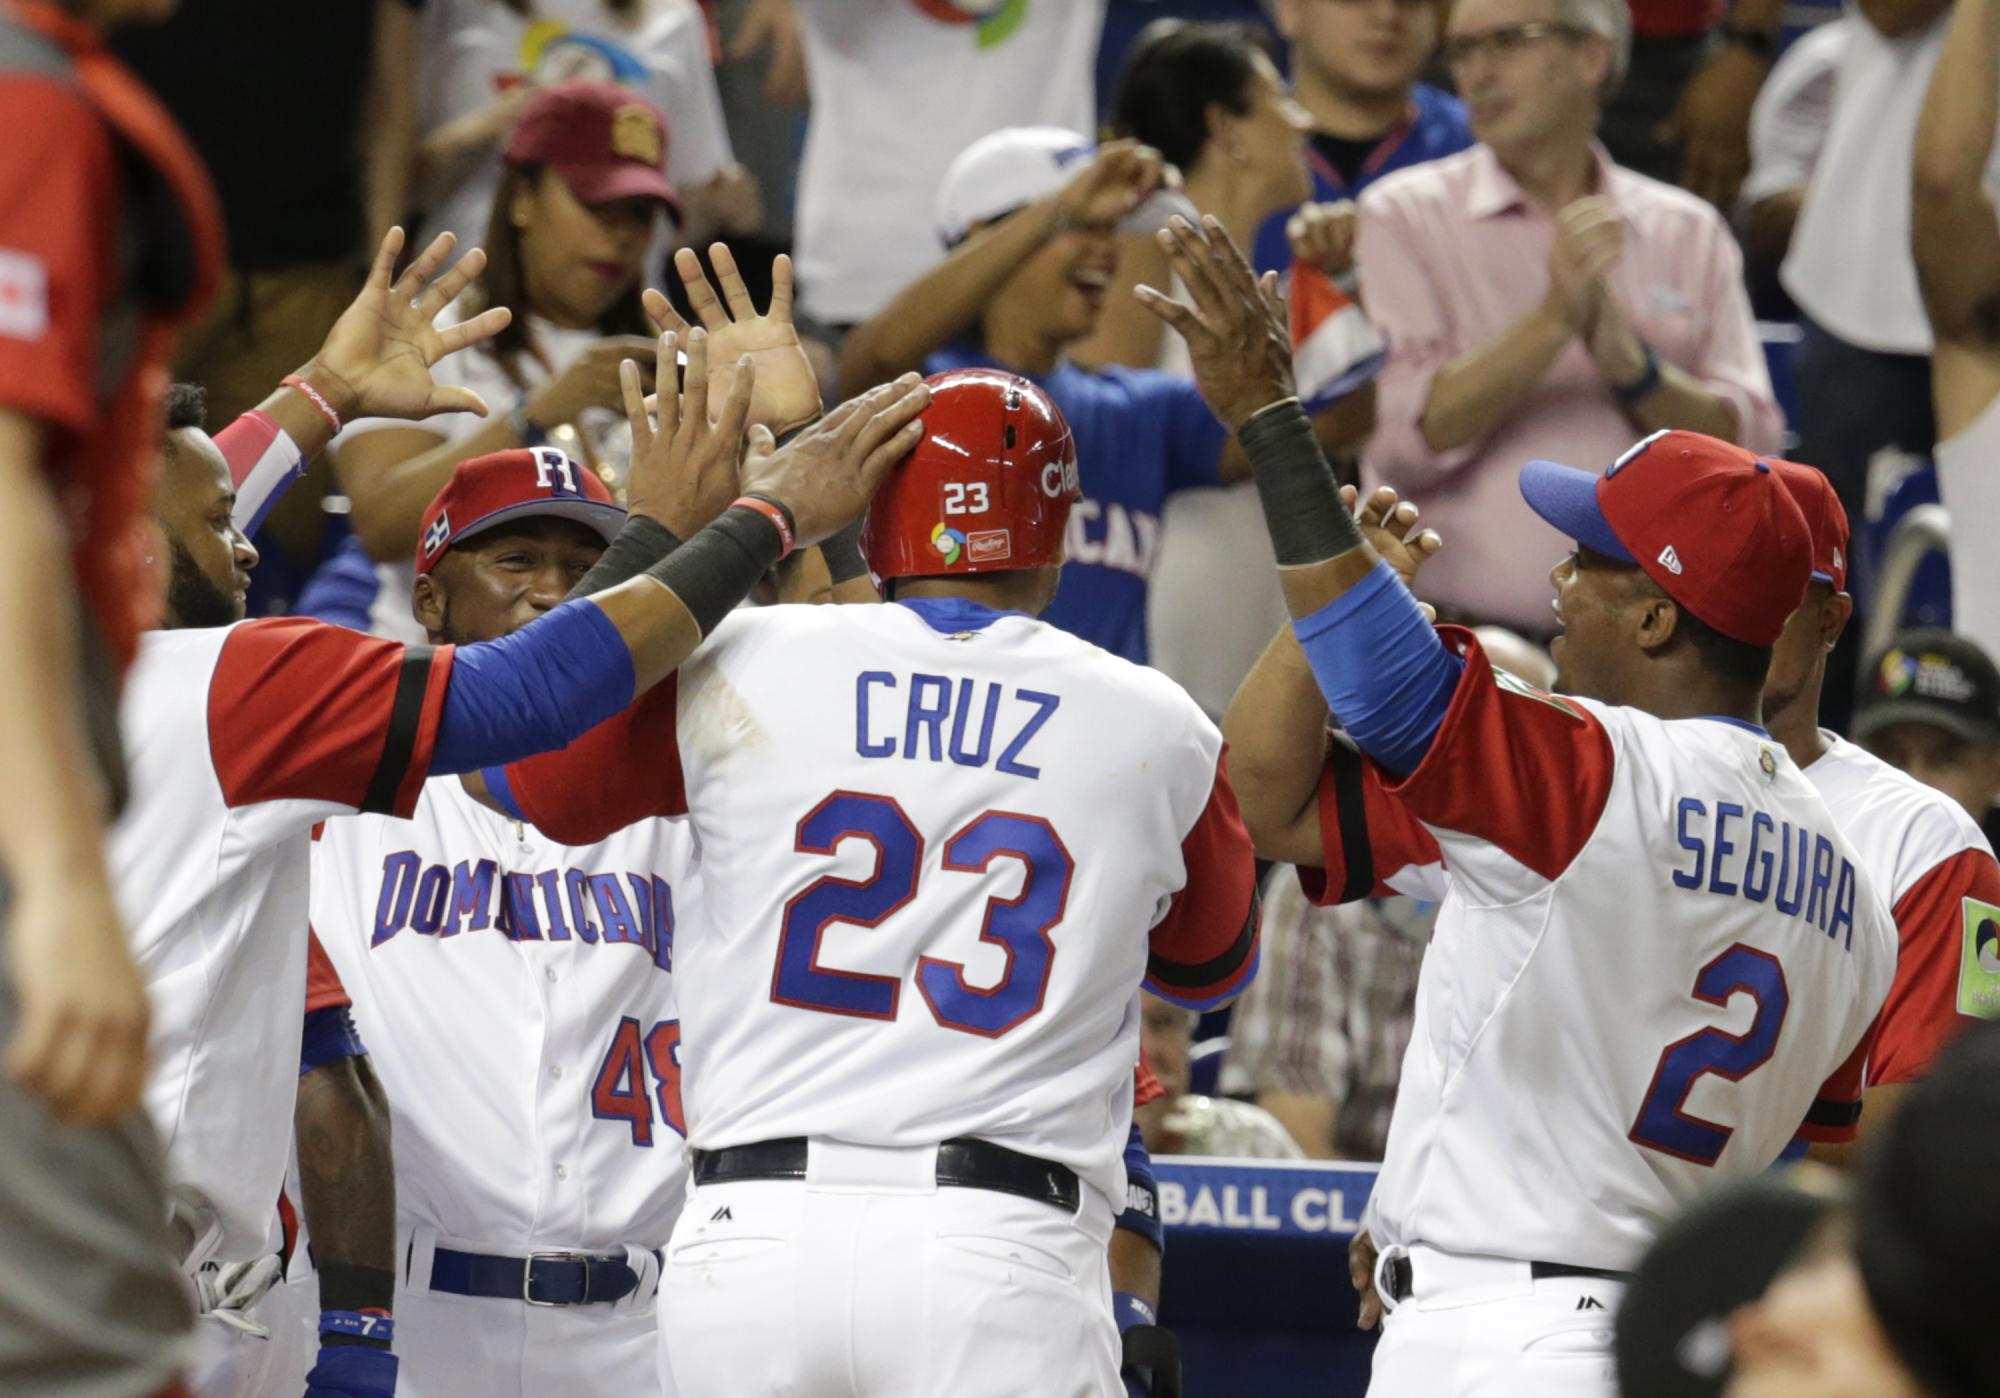 La celebración de República Dominicana de deja sentir cuando Nelson Cruz anota en el segundo episodio, una entrada en la que su equipo marcó cuatro carreras.